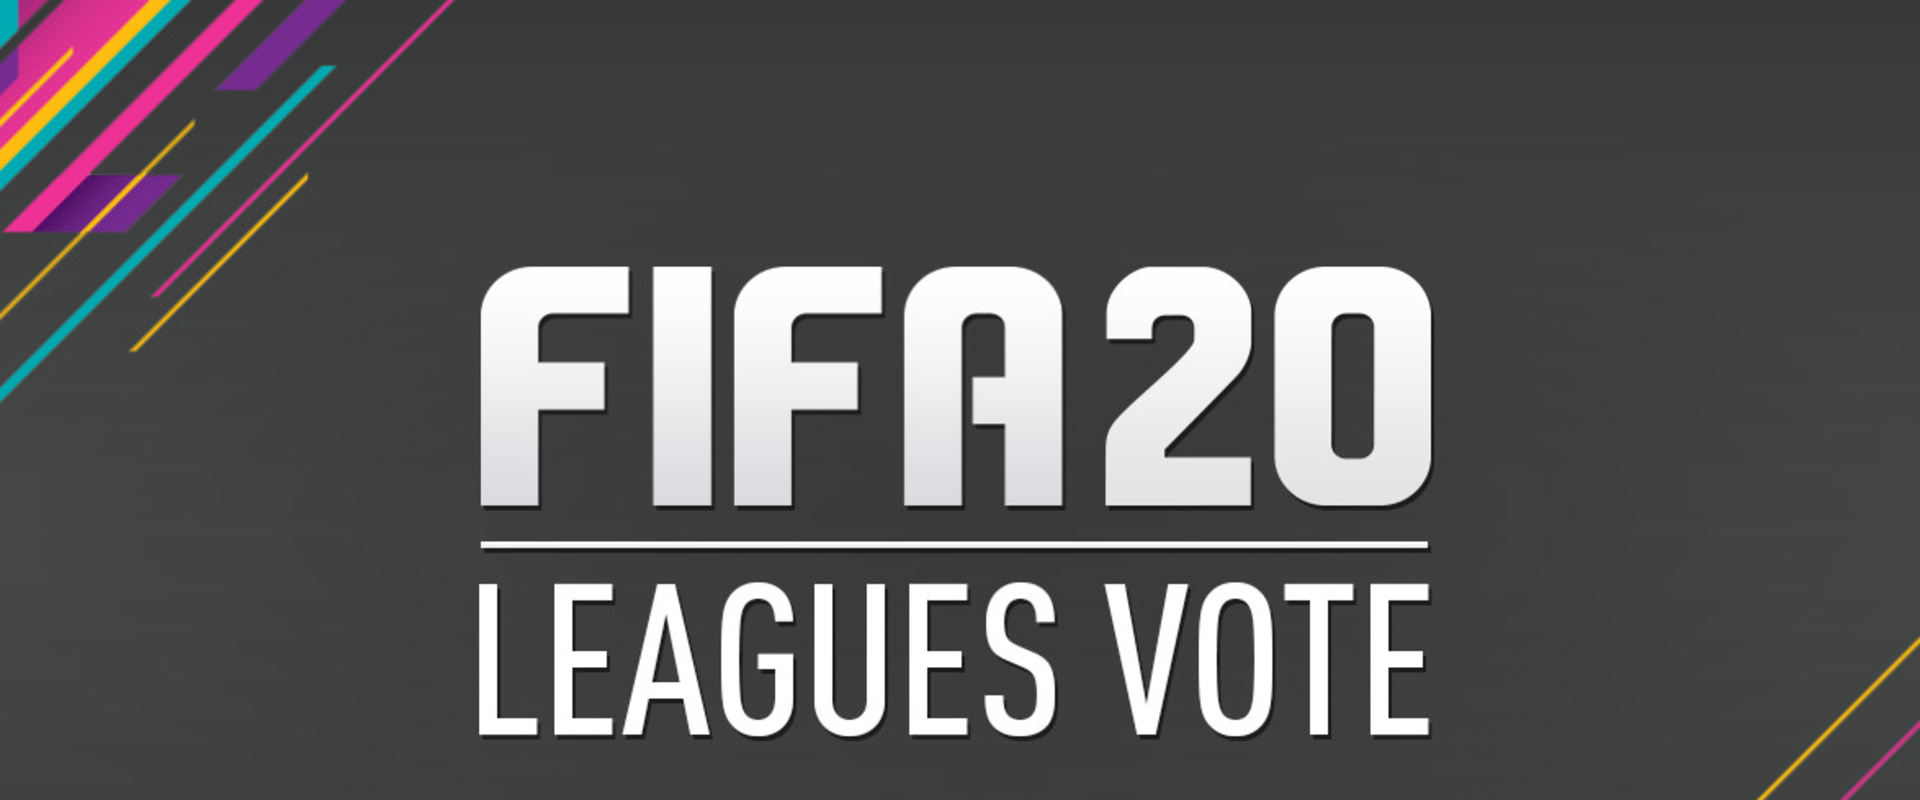 Ideje beszavazni a magyar bajnokságot a FIFA 20-ba